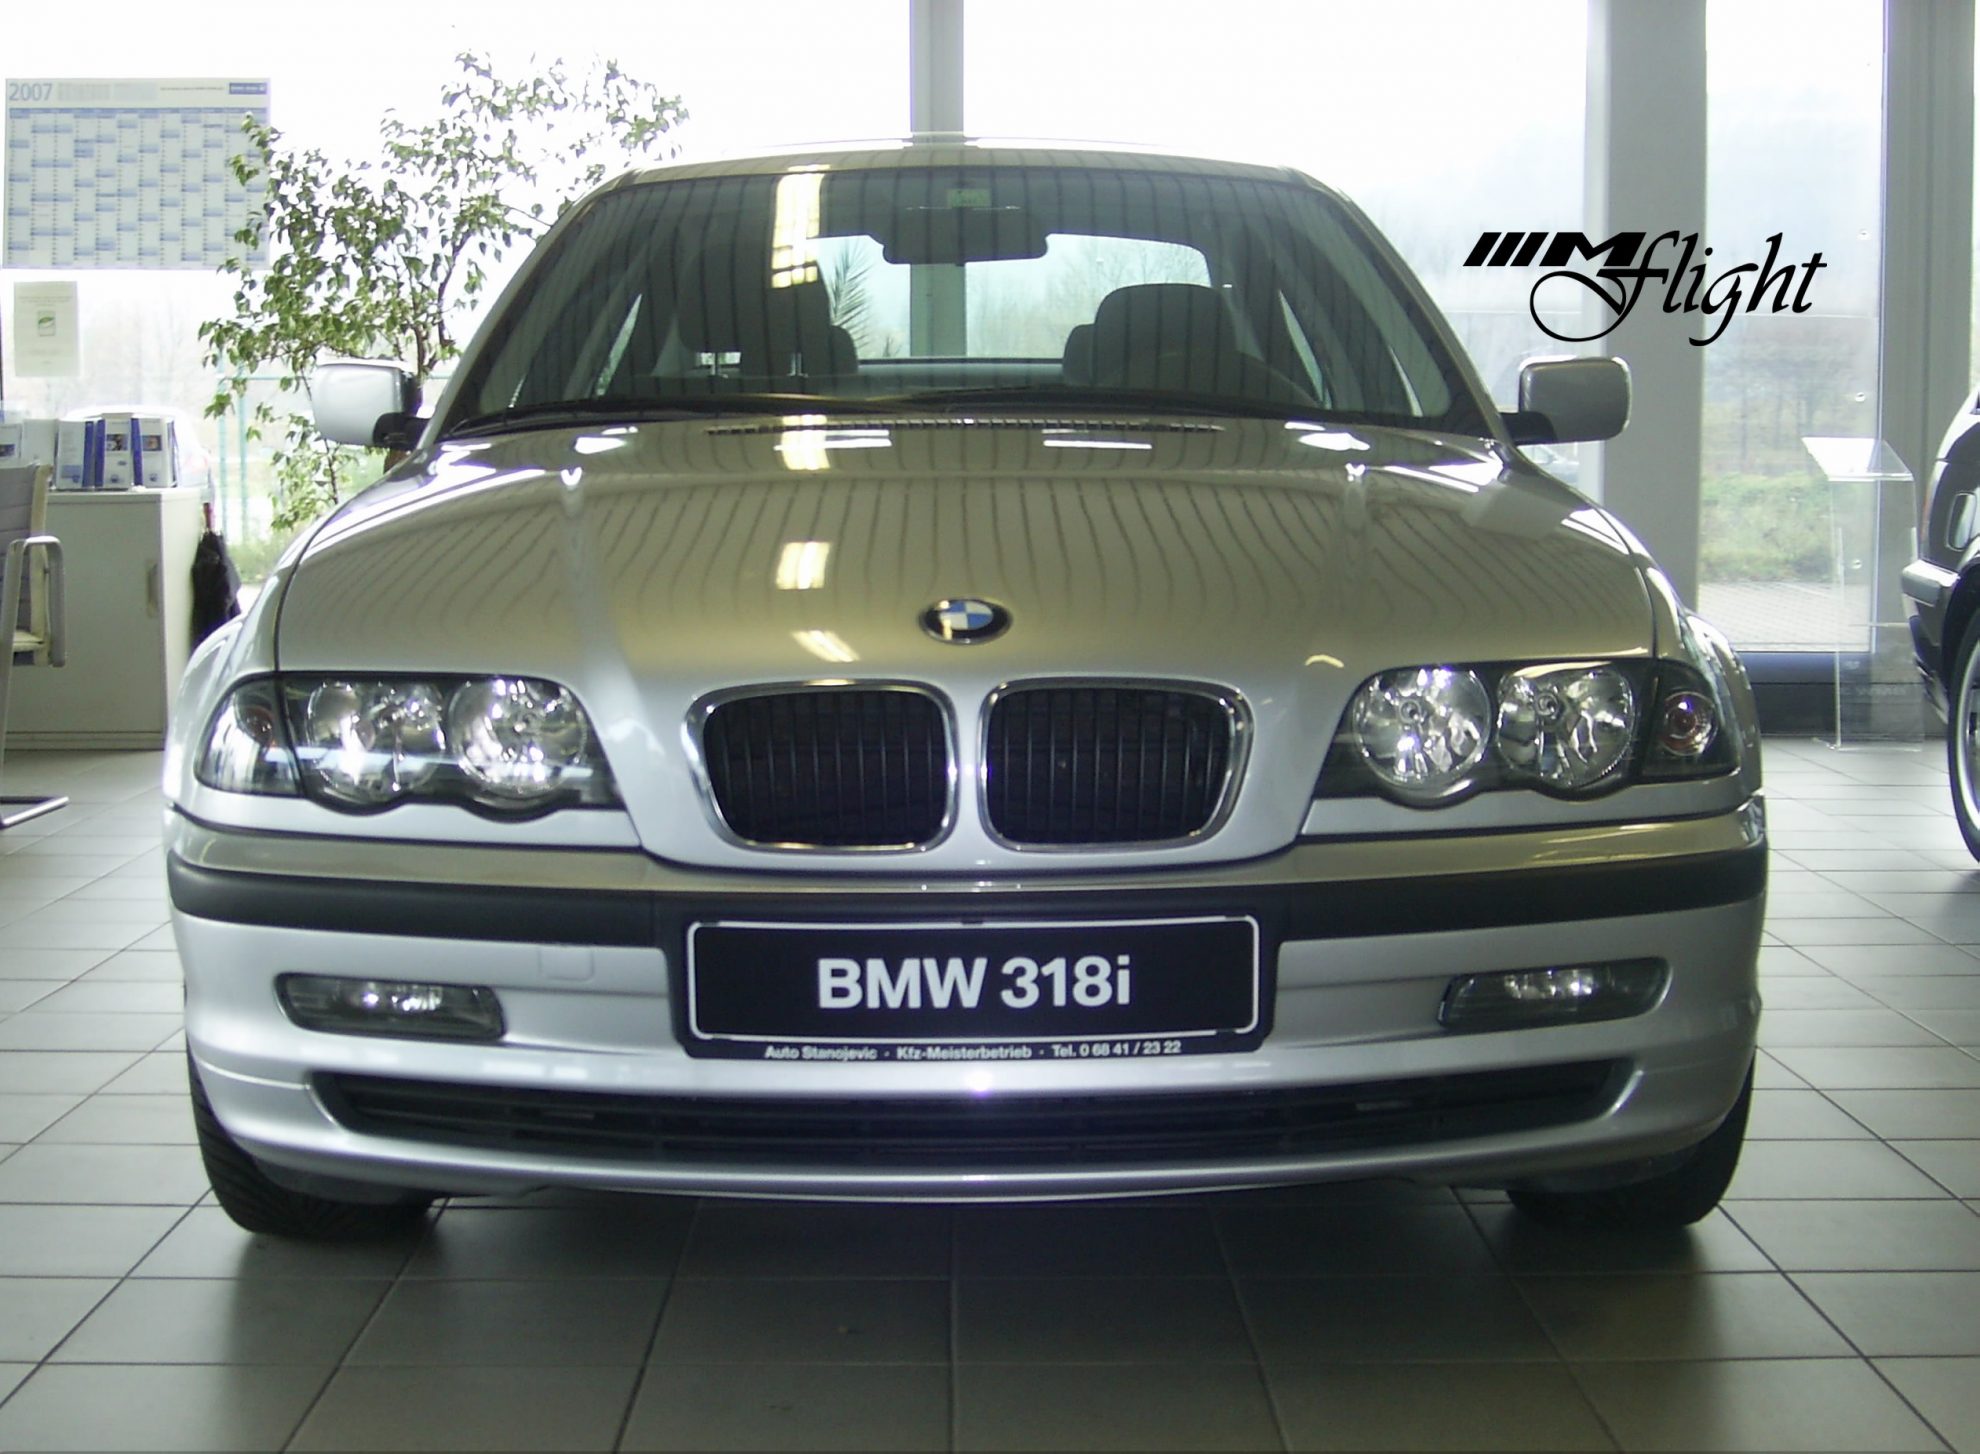 L'histoire et les variantes de la Série 3 BMW de la série E46 -